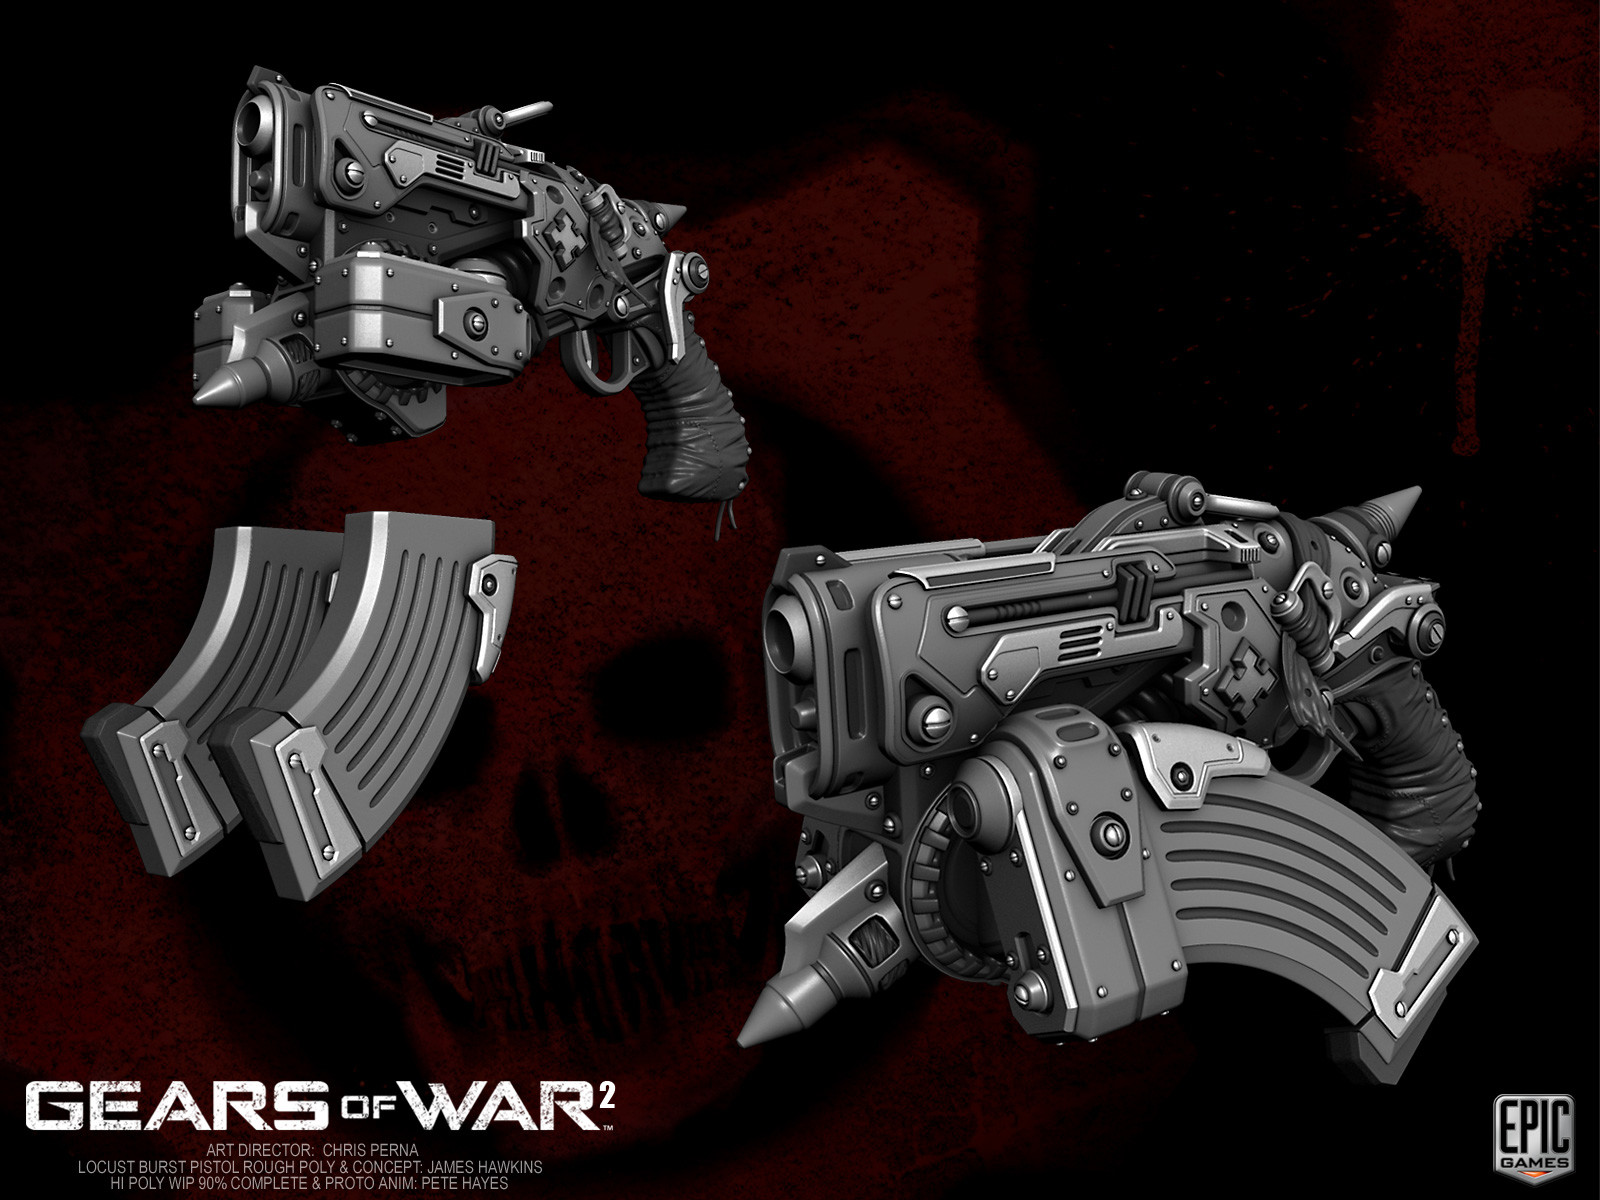 Gears of war 2 guns to draw